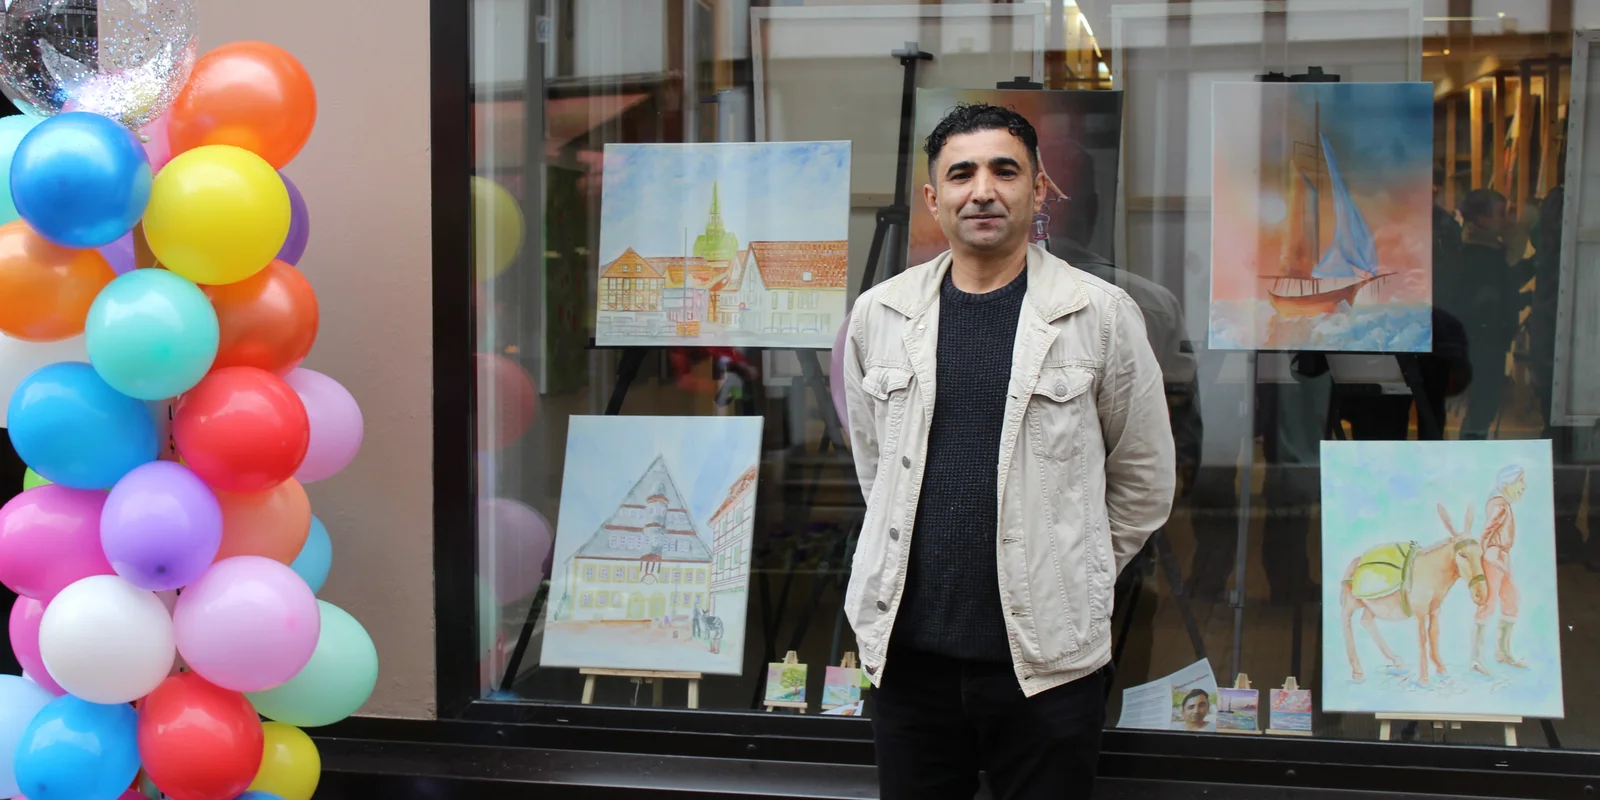 Der Künstler Abdulkarim Alhasan steht vor einem Fenster mit Bildern. Neben ihm sind bunte Luftballons